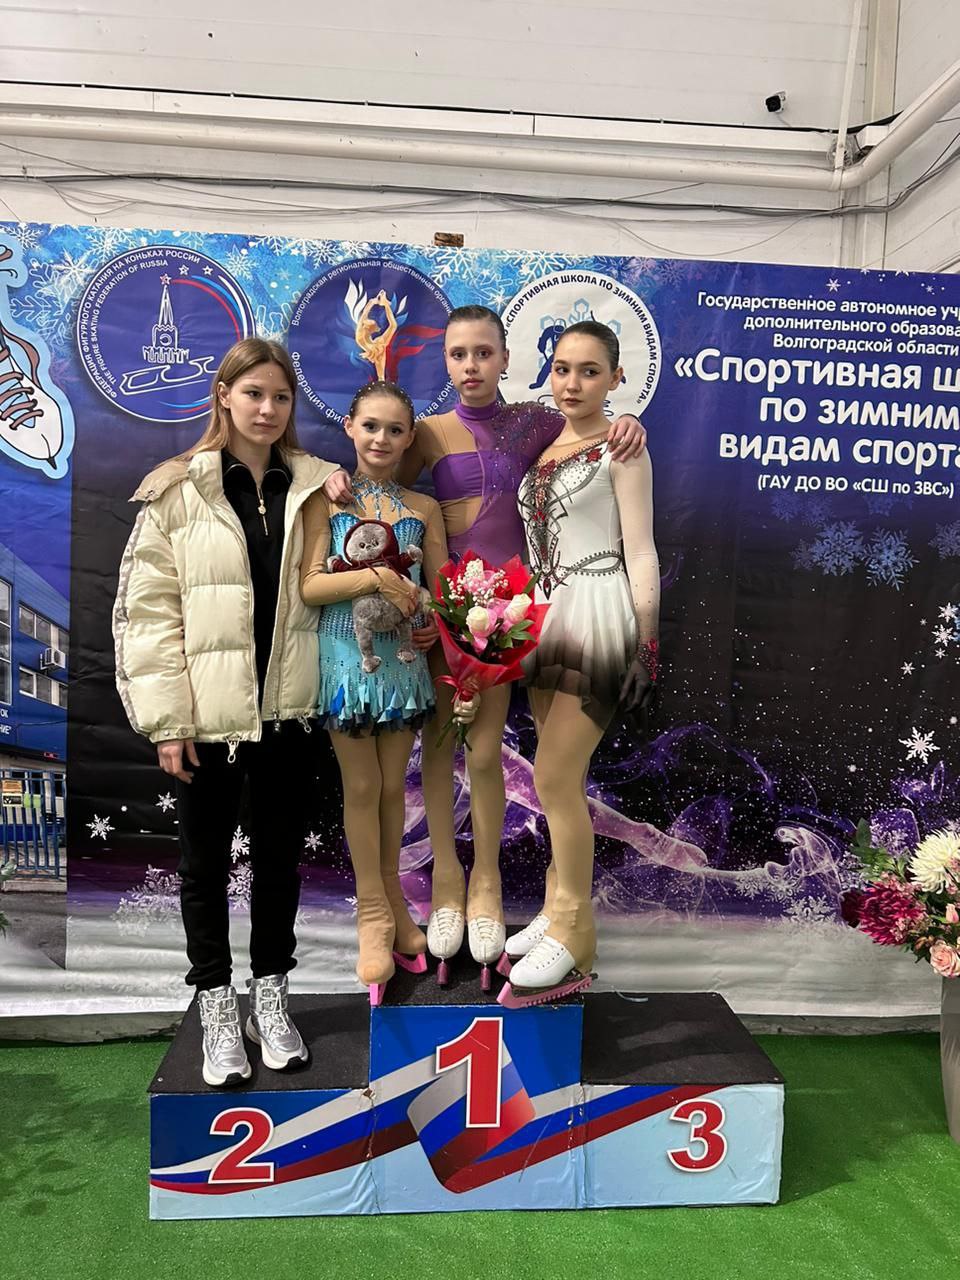 po figurnomu kataniju 2 - Региональные соревнования Волгоградской области по фигурному катанию.